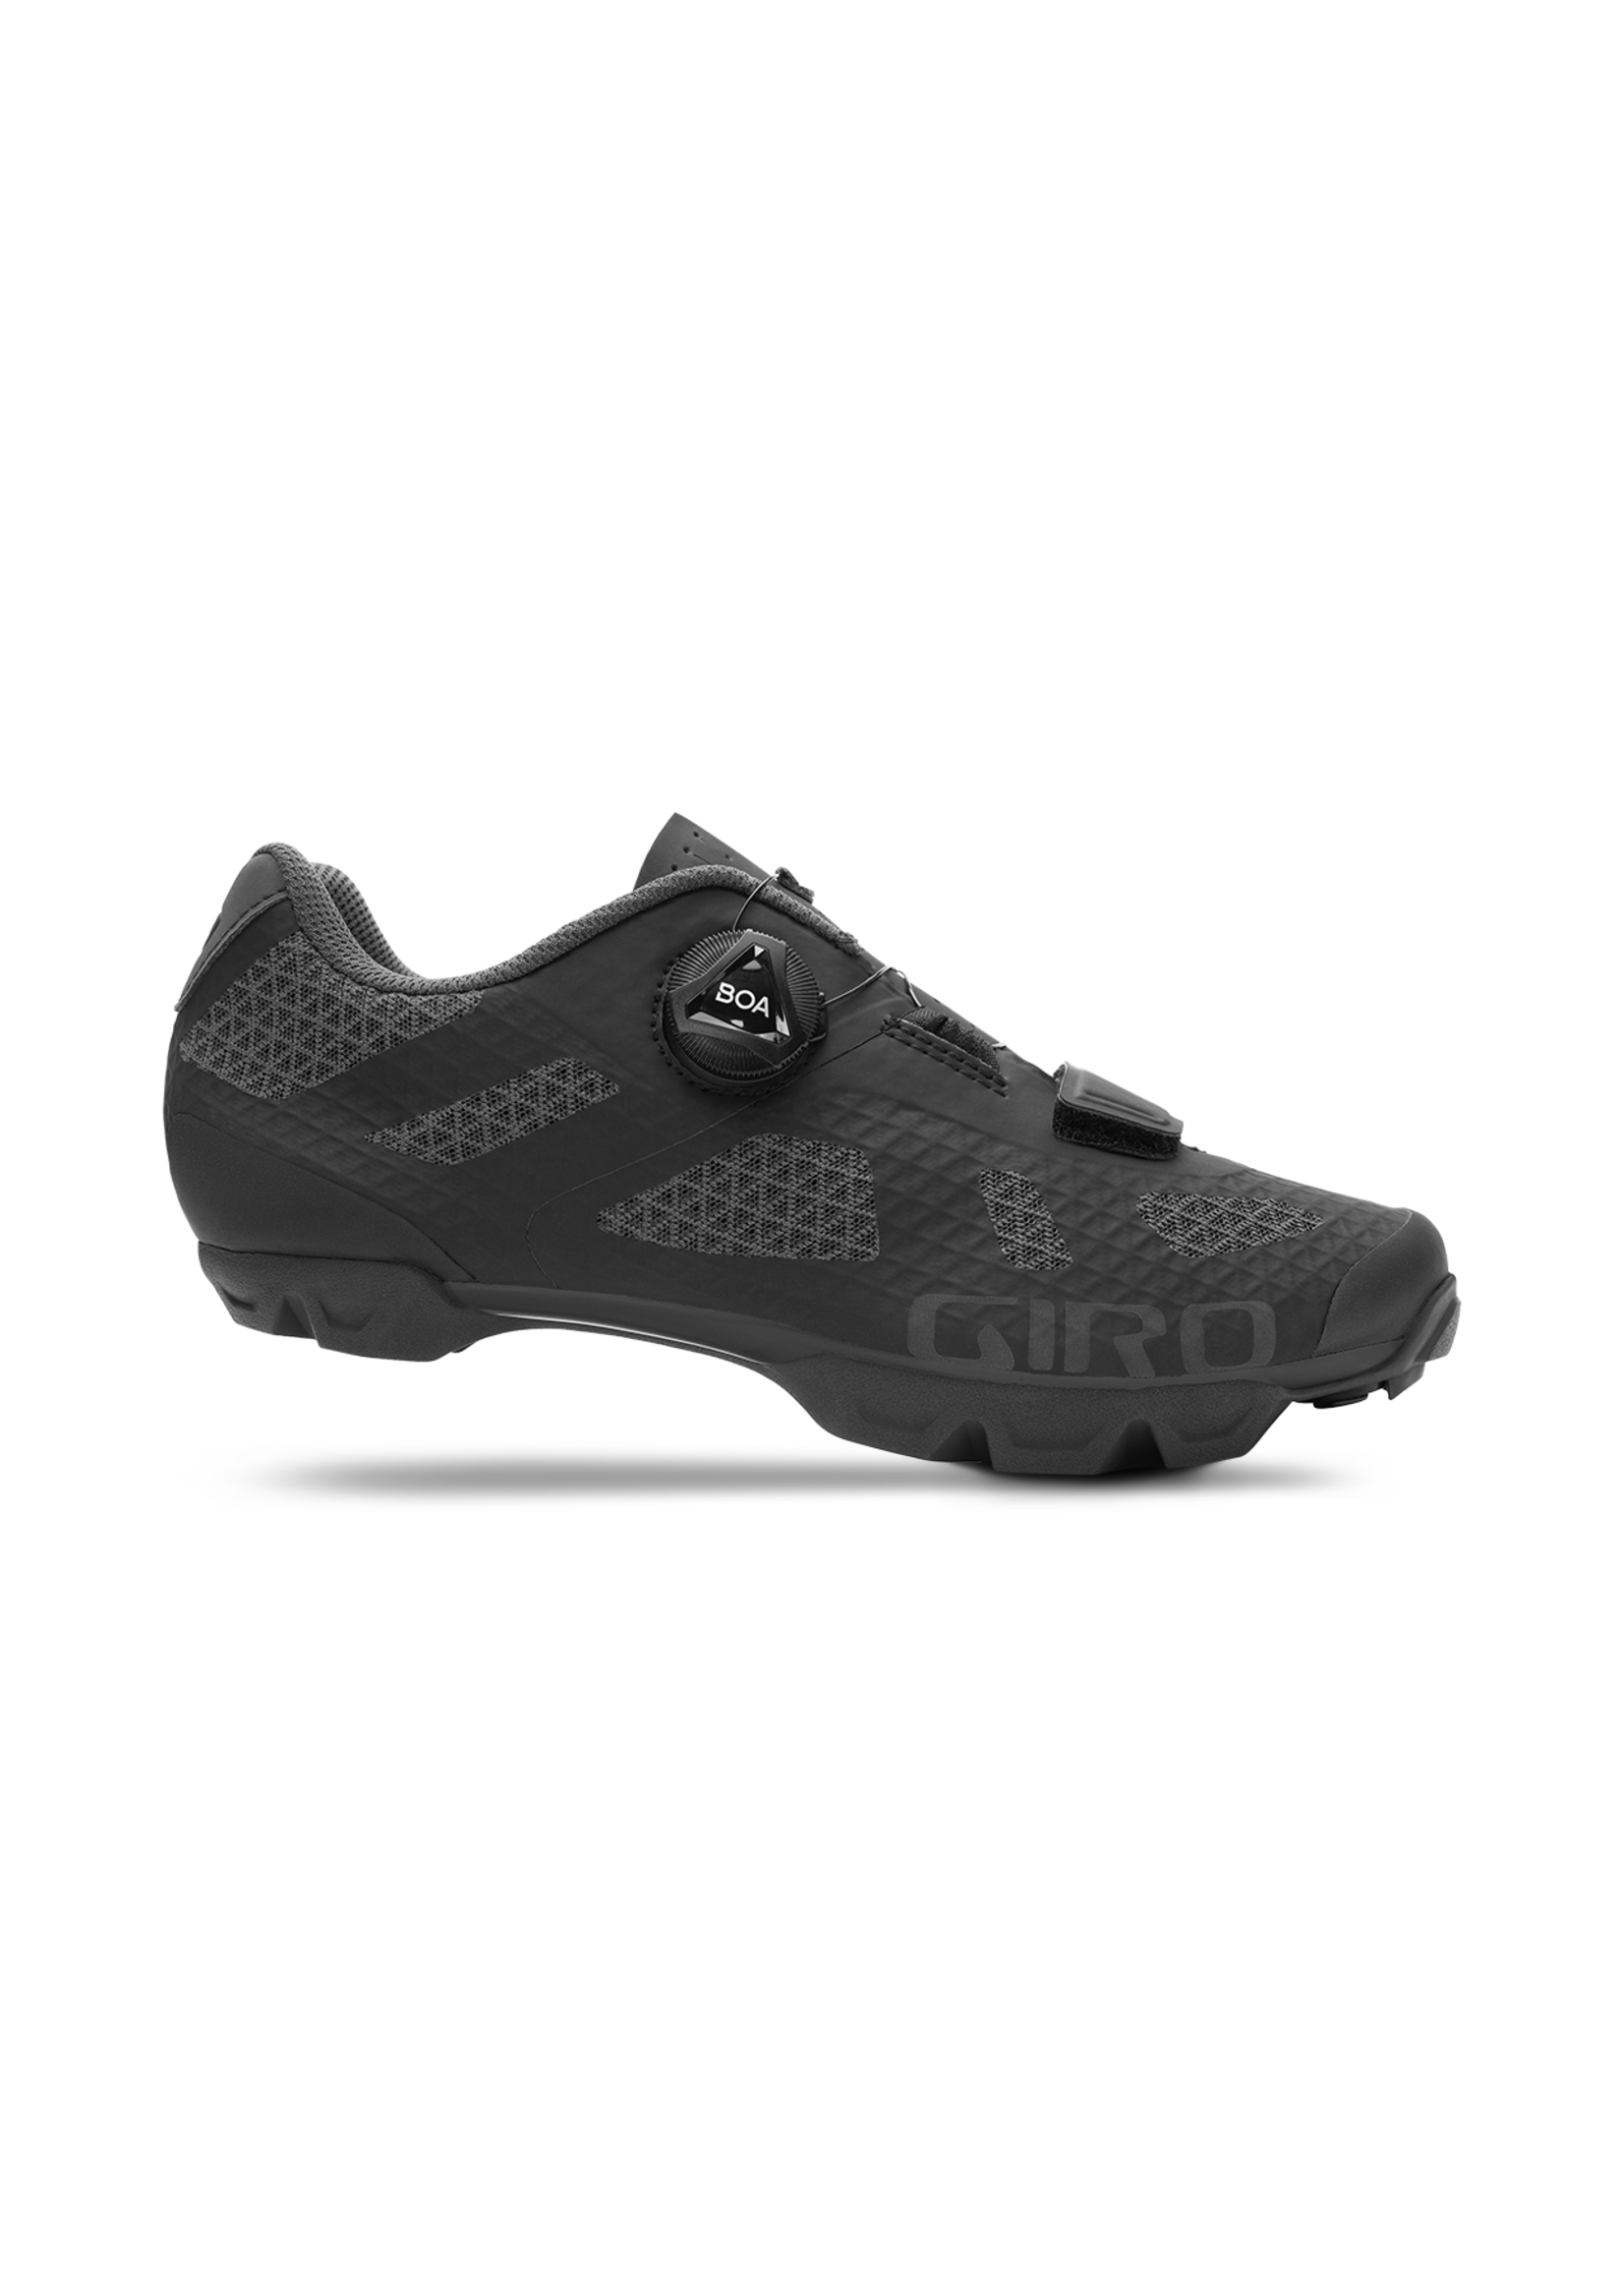 Giro Women's Rincon Cycling Shoe - Black